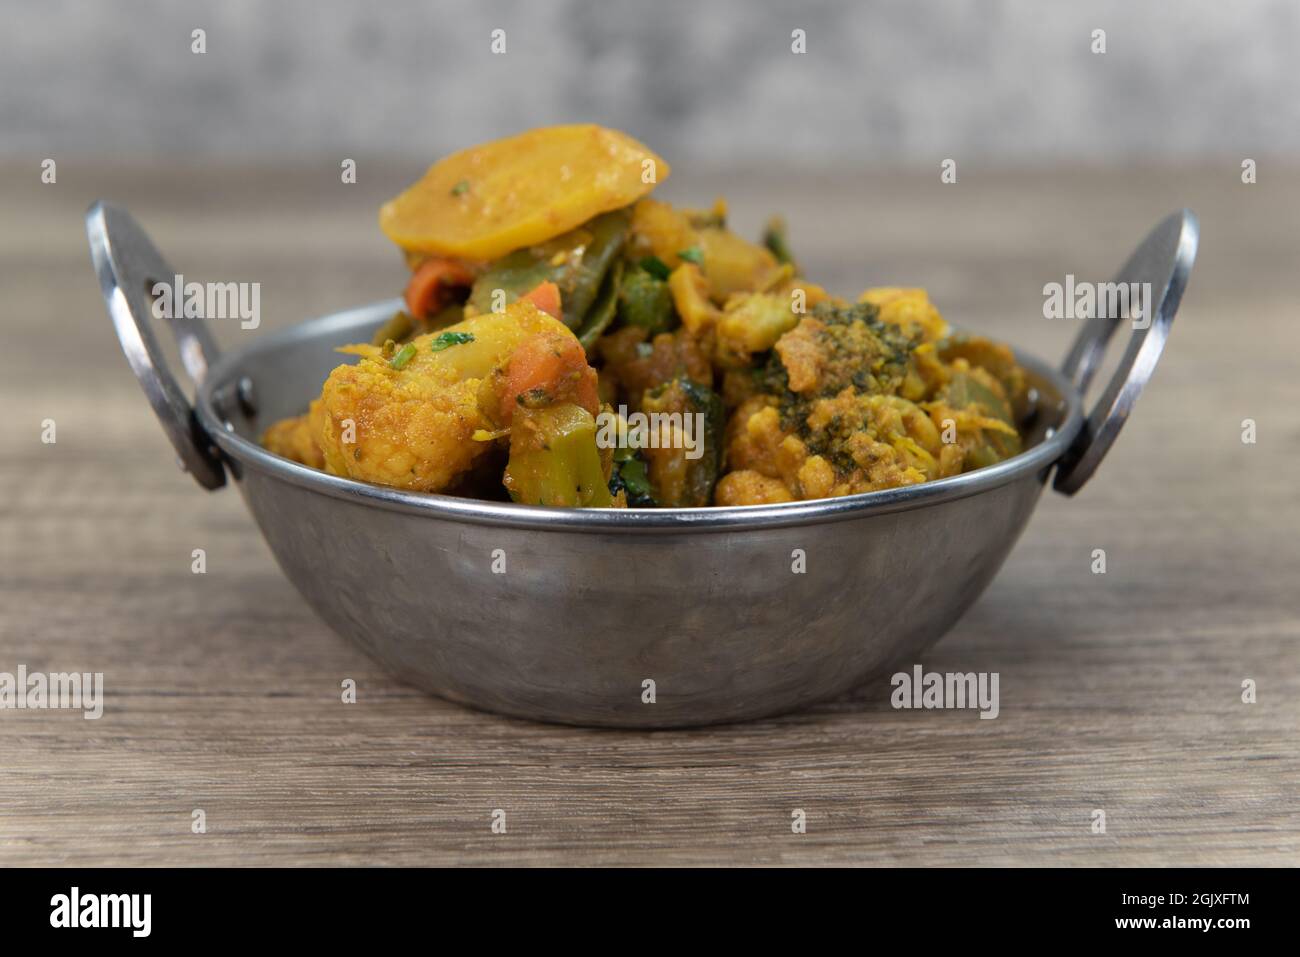 Verdure aromatizzate al curry in una ciotola del ristorante indiano cucinate e condite perfettamente. Foto Stock